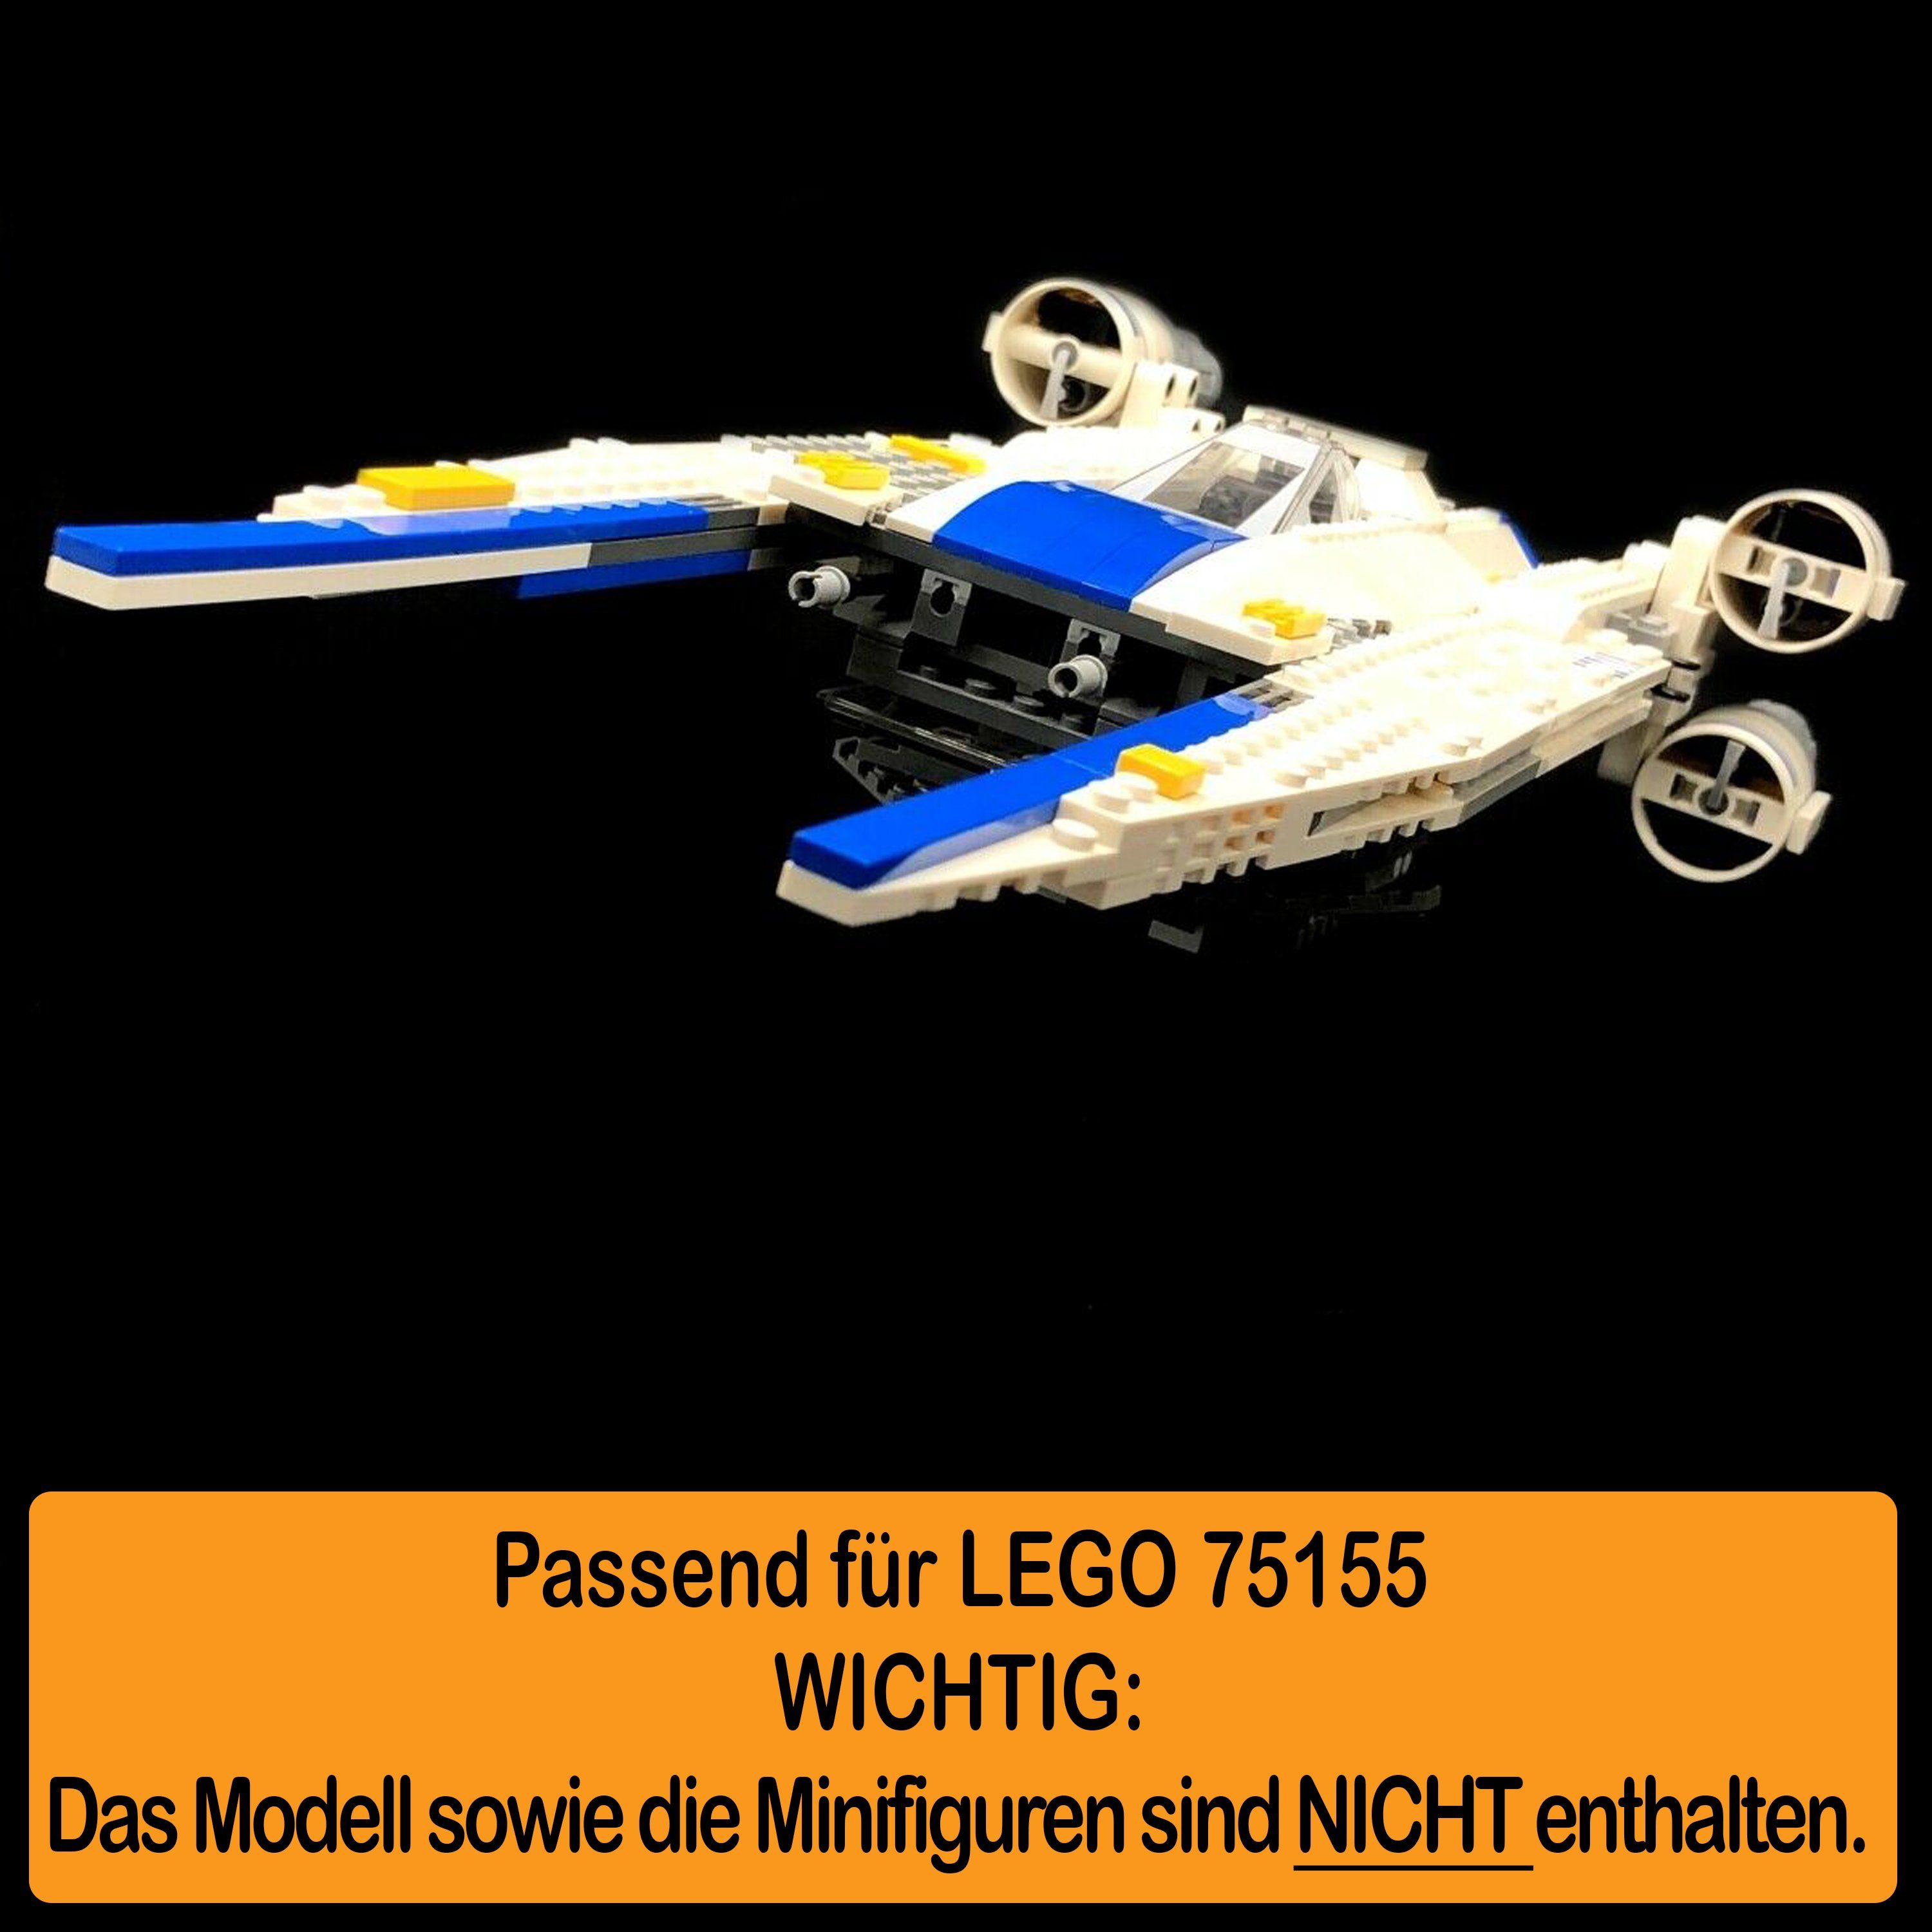 Made Rebel Fighter 75155 100% und AREA17 selbst U-Wing Winkel Stand Standfuß zum für LEGO zusammenbauen), Display einstellbar, Acryl (verschiedene Positionen Germany in